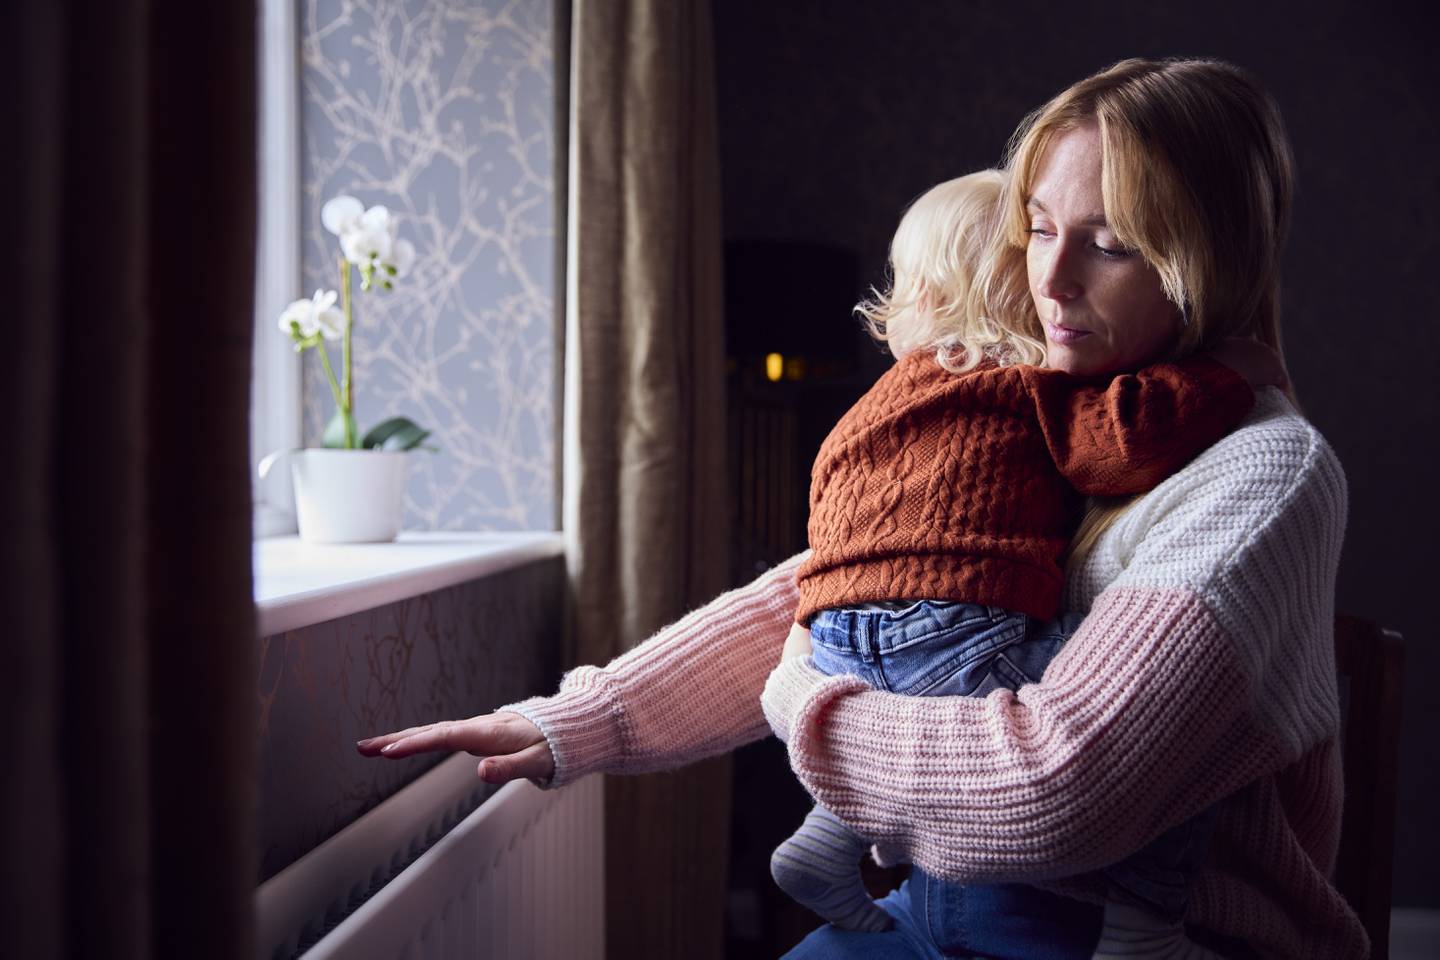 Barnefamilier som leier bolig har høy risiko for å være fattige, ifølge ny rapport. Bildet er et illustrasjonsfoto.